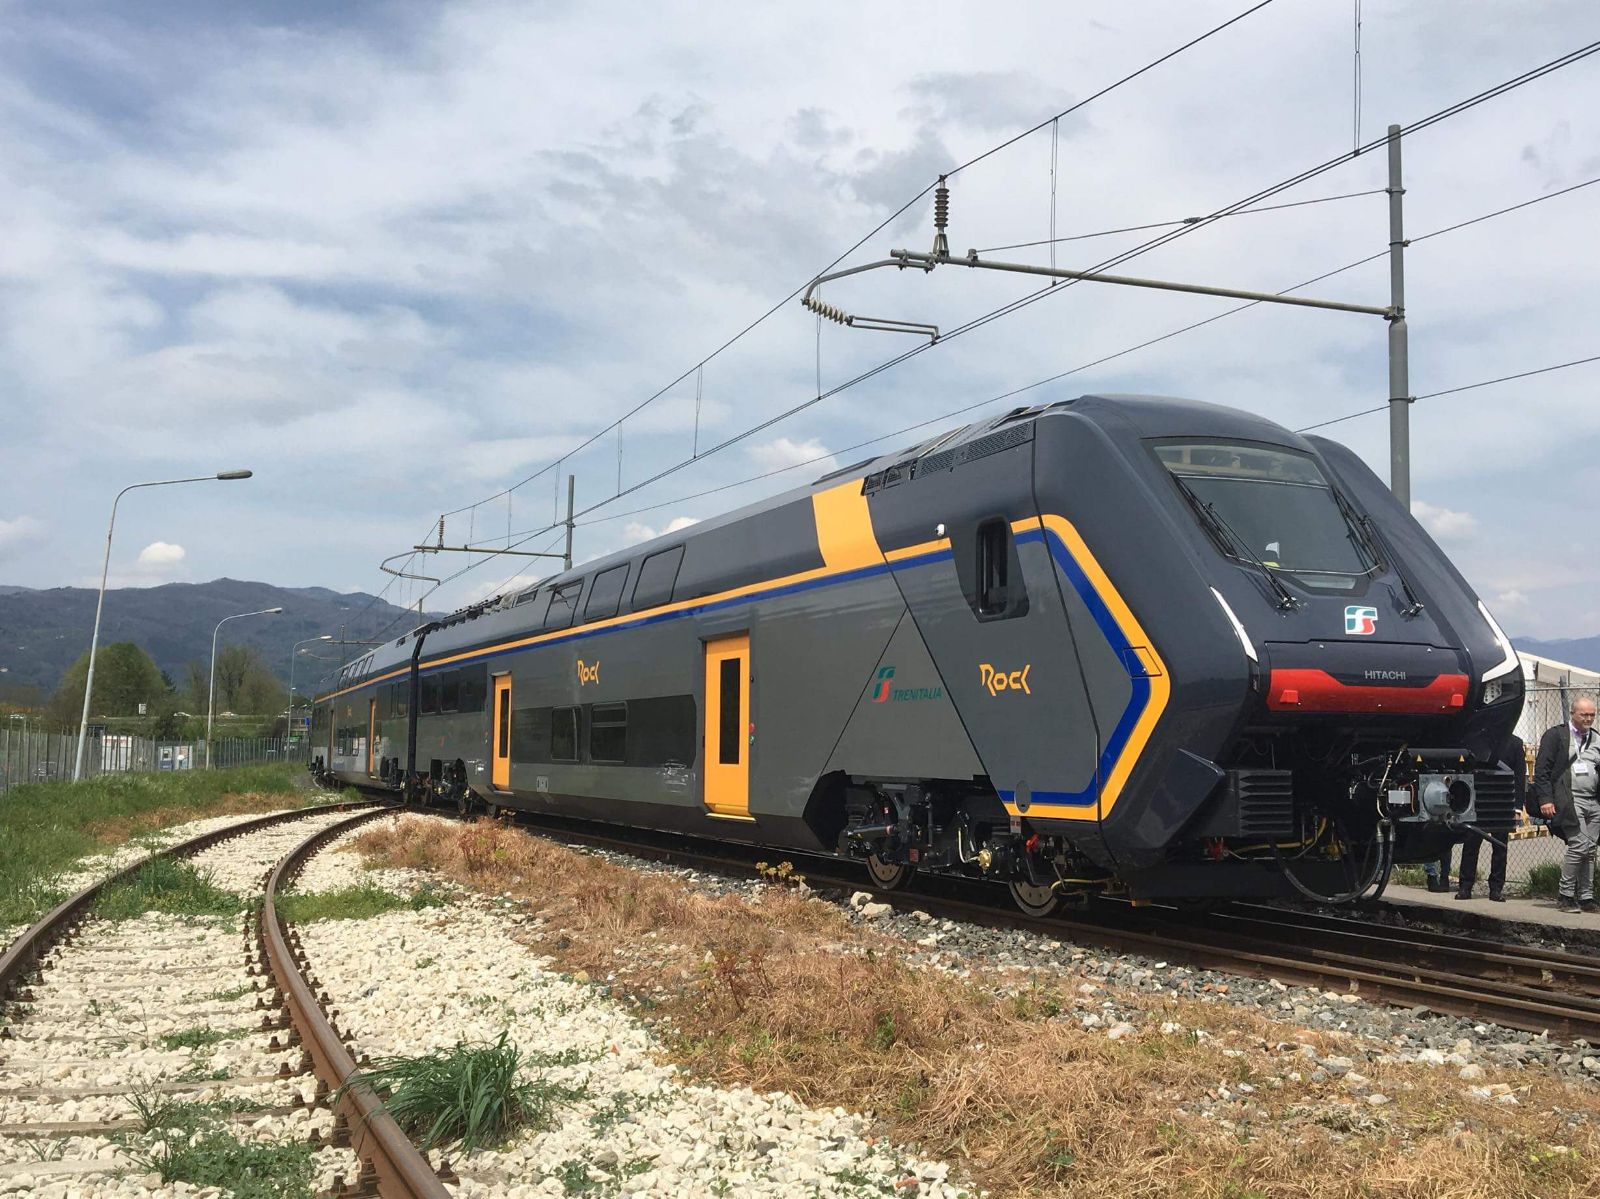 Nuovi treni Rock, da stamattina sulla tratta Firenze-Valdarno-Arezzo il primo convoglio